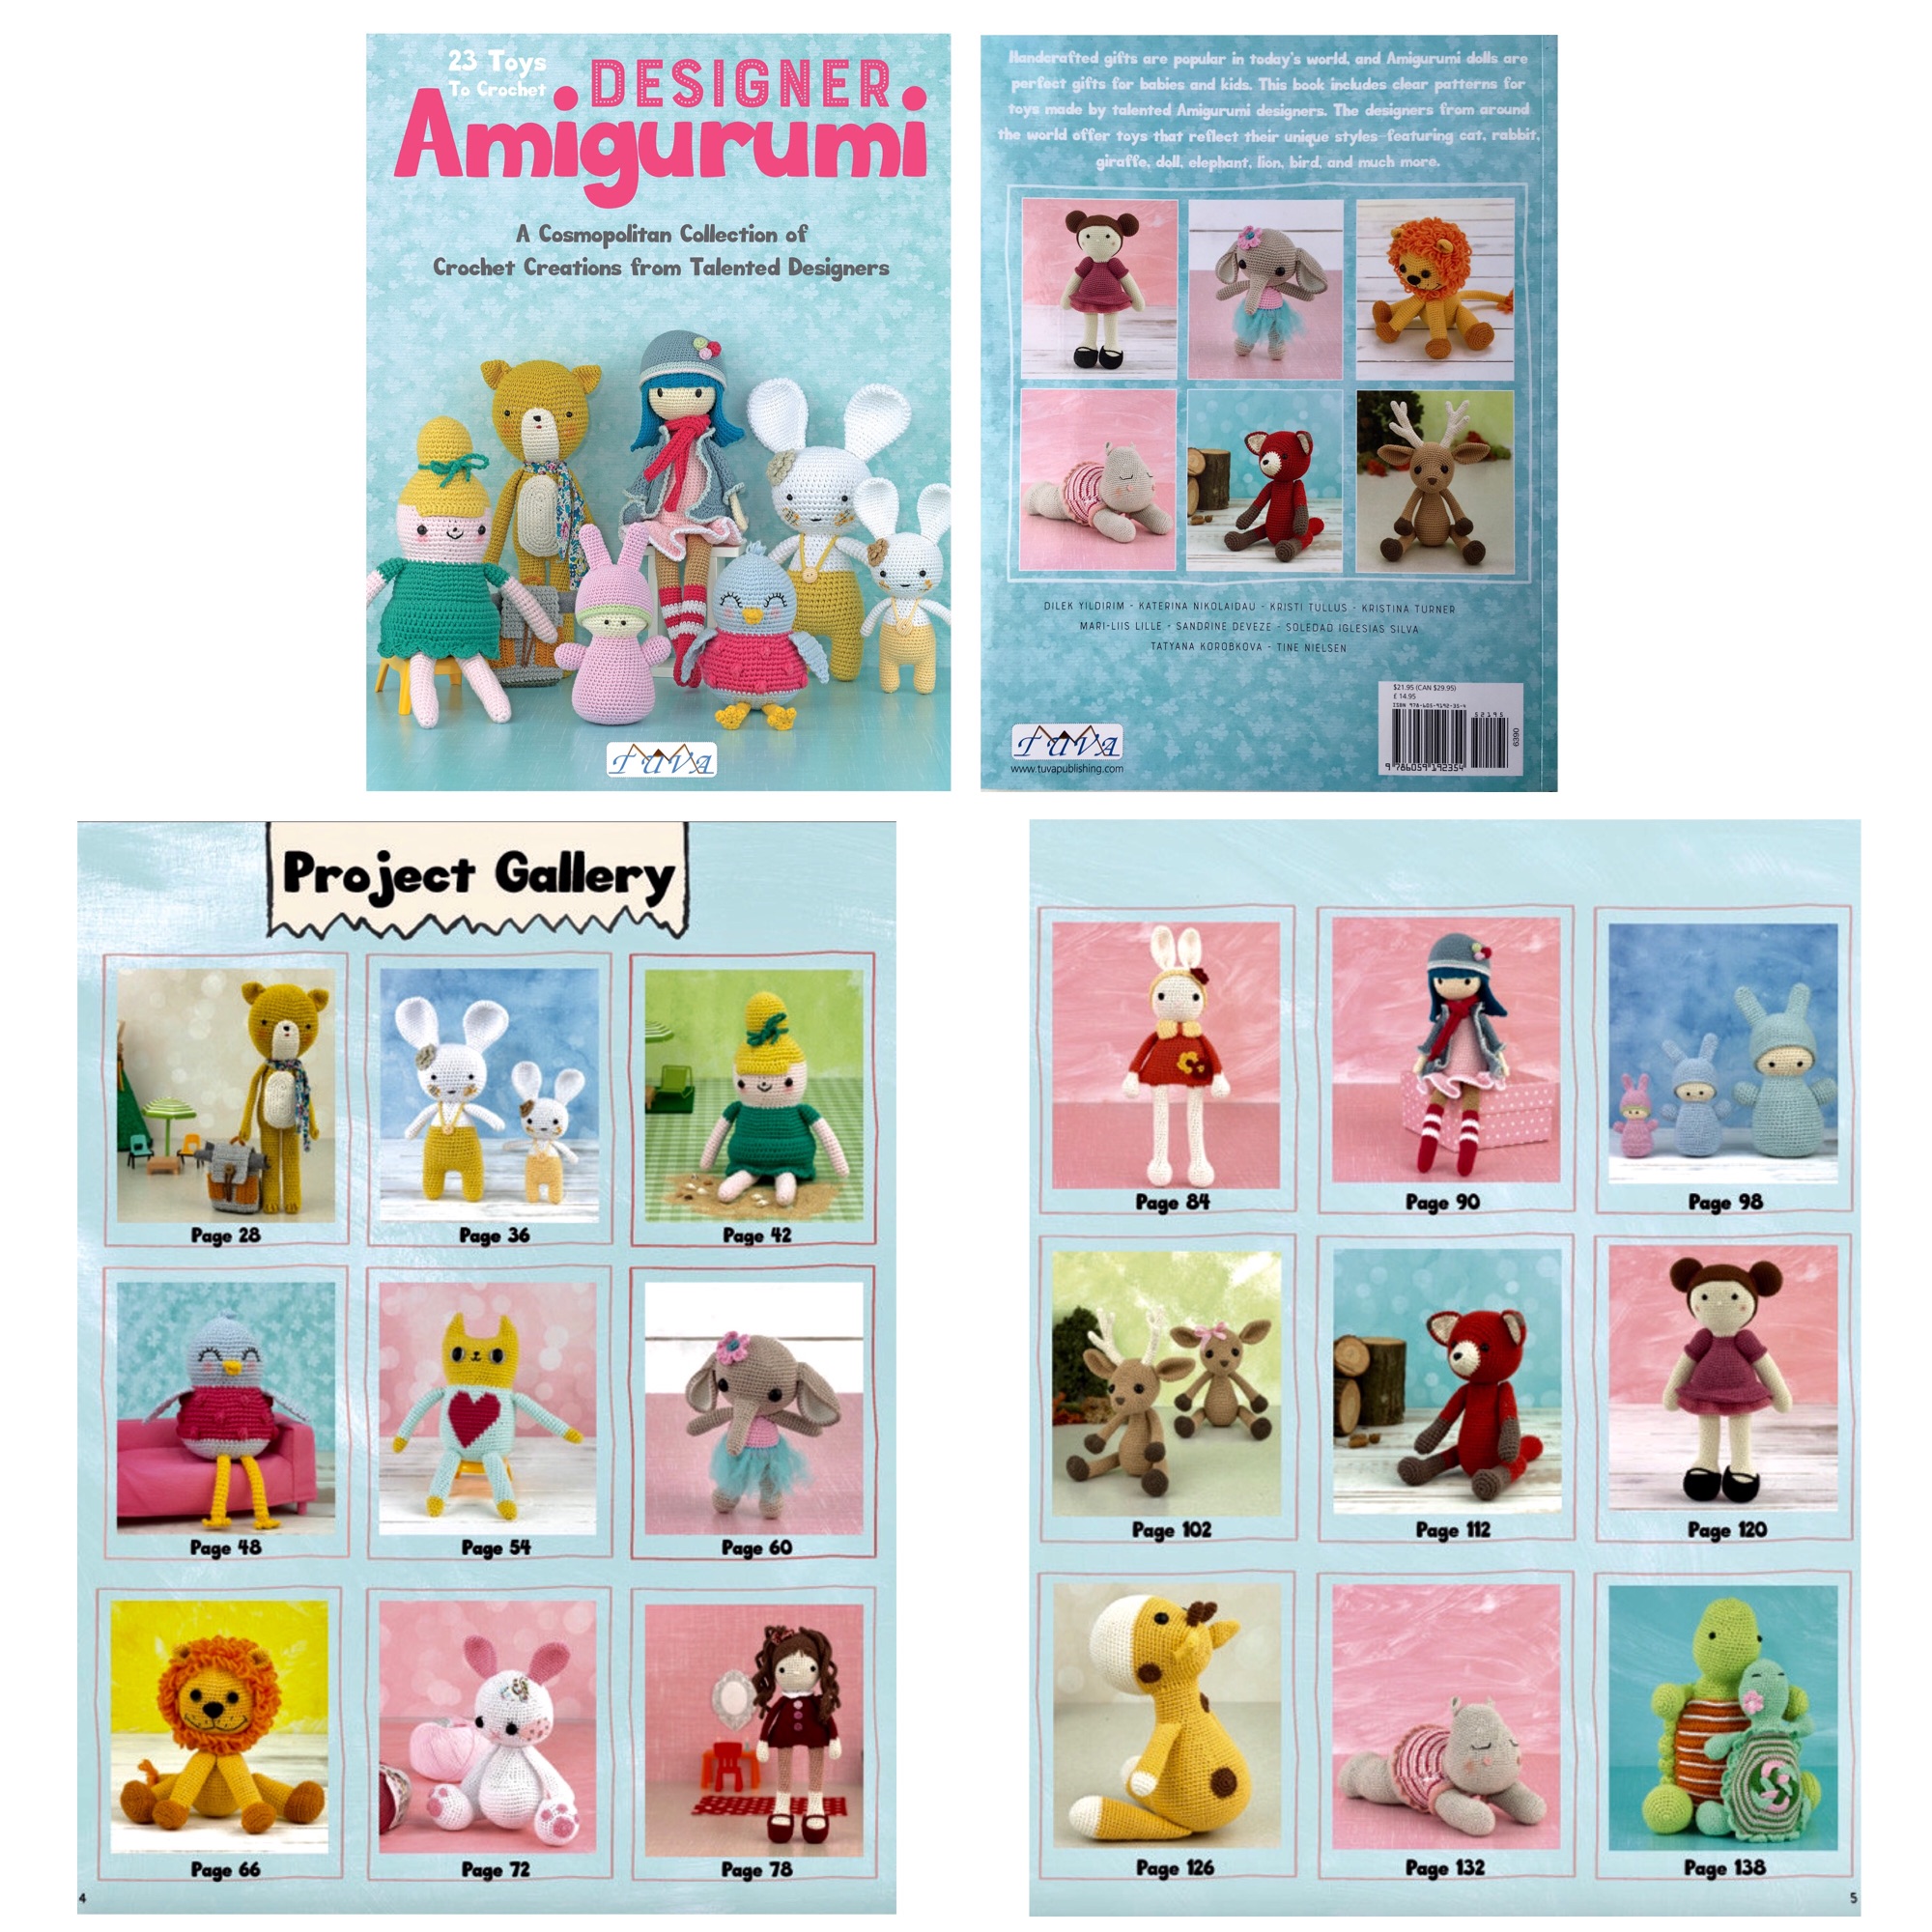 Tuva book designer amigurumi 23 toys to crochet